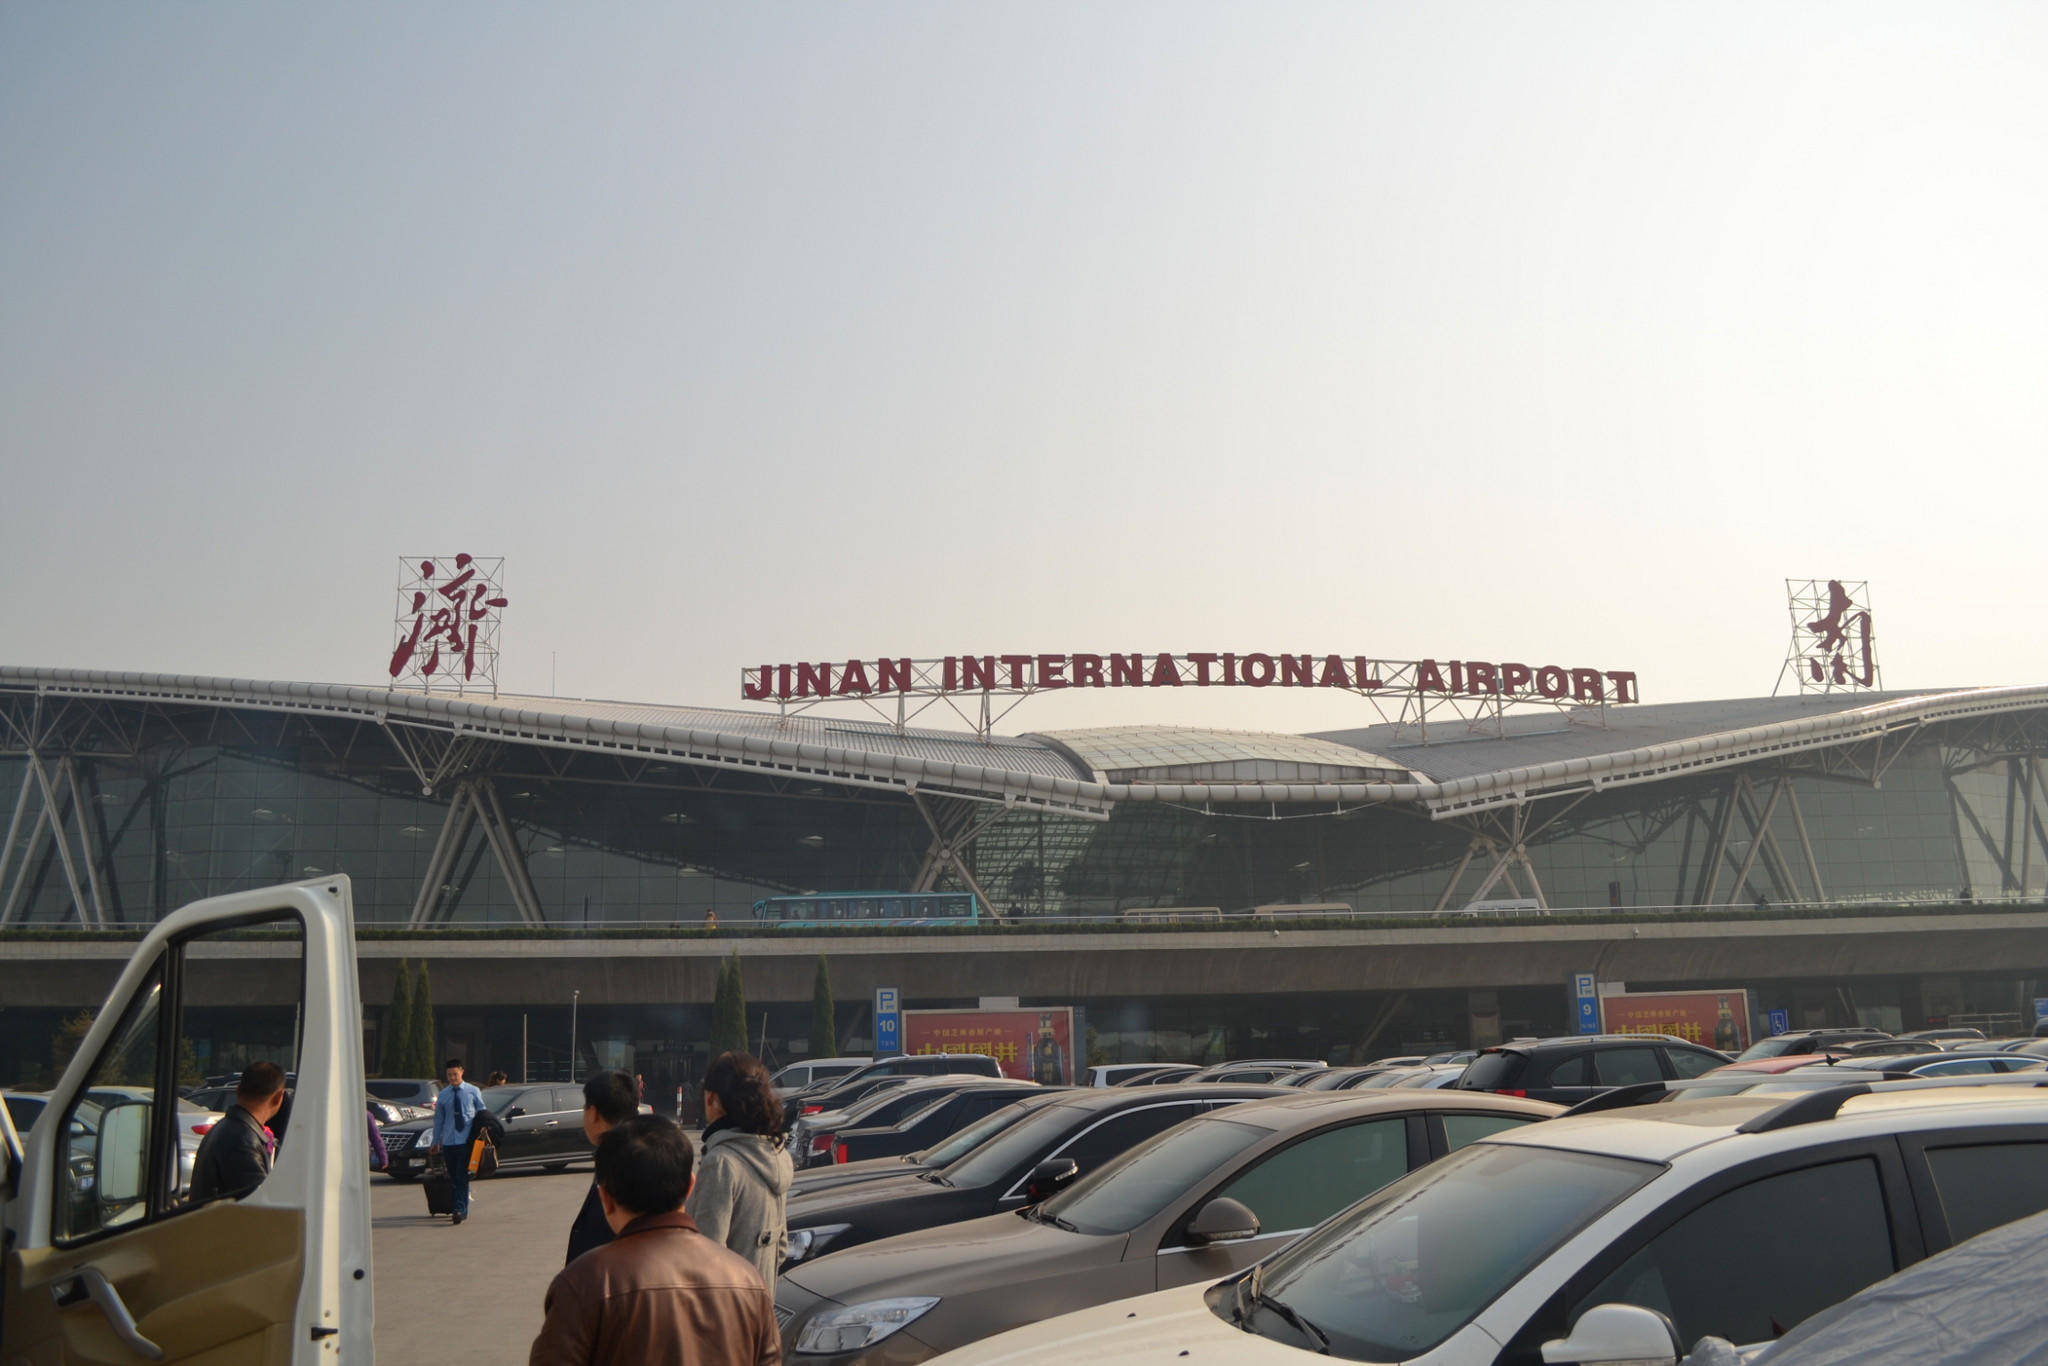 济南遥墙国际机场,位于中国山东省济南市历城区和章丘区交界处,距市